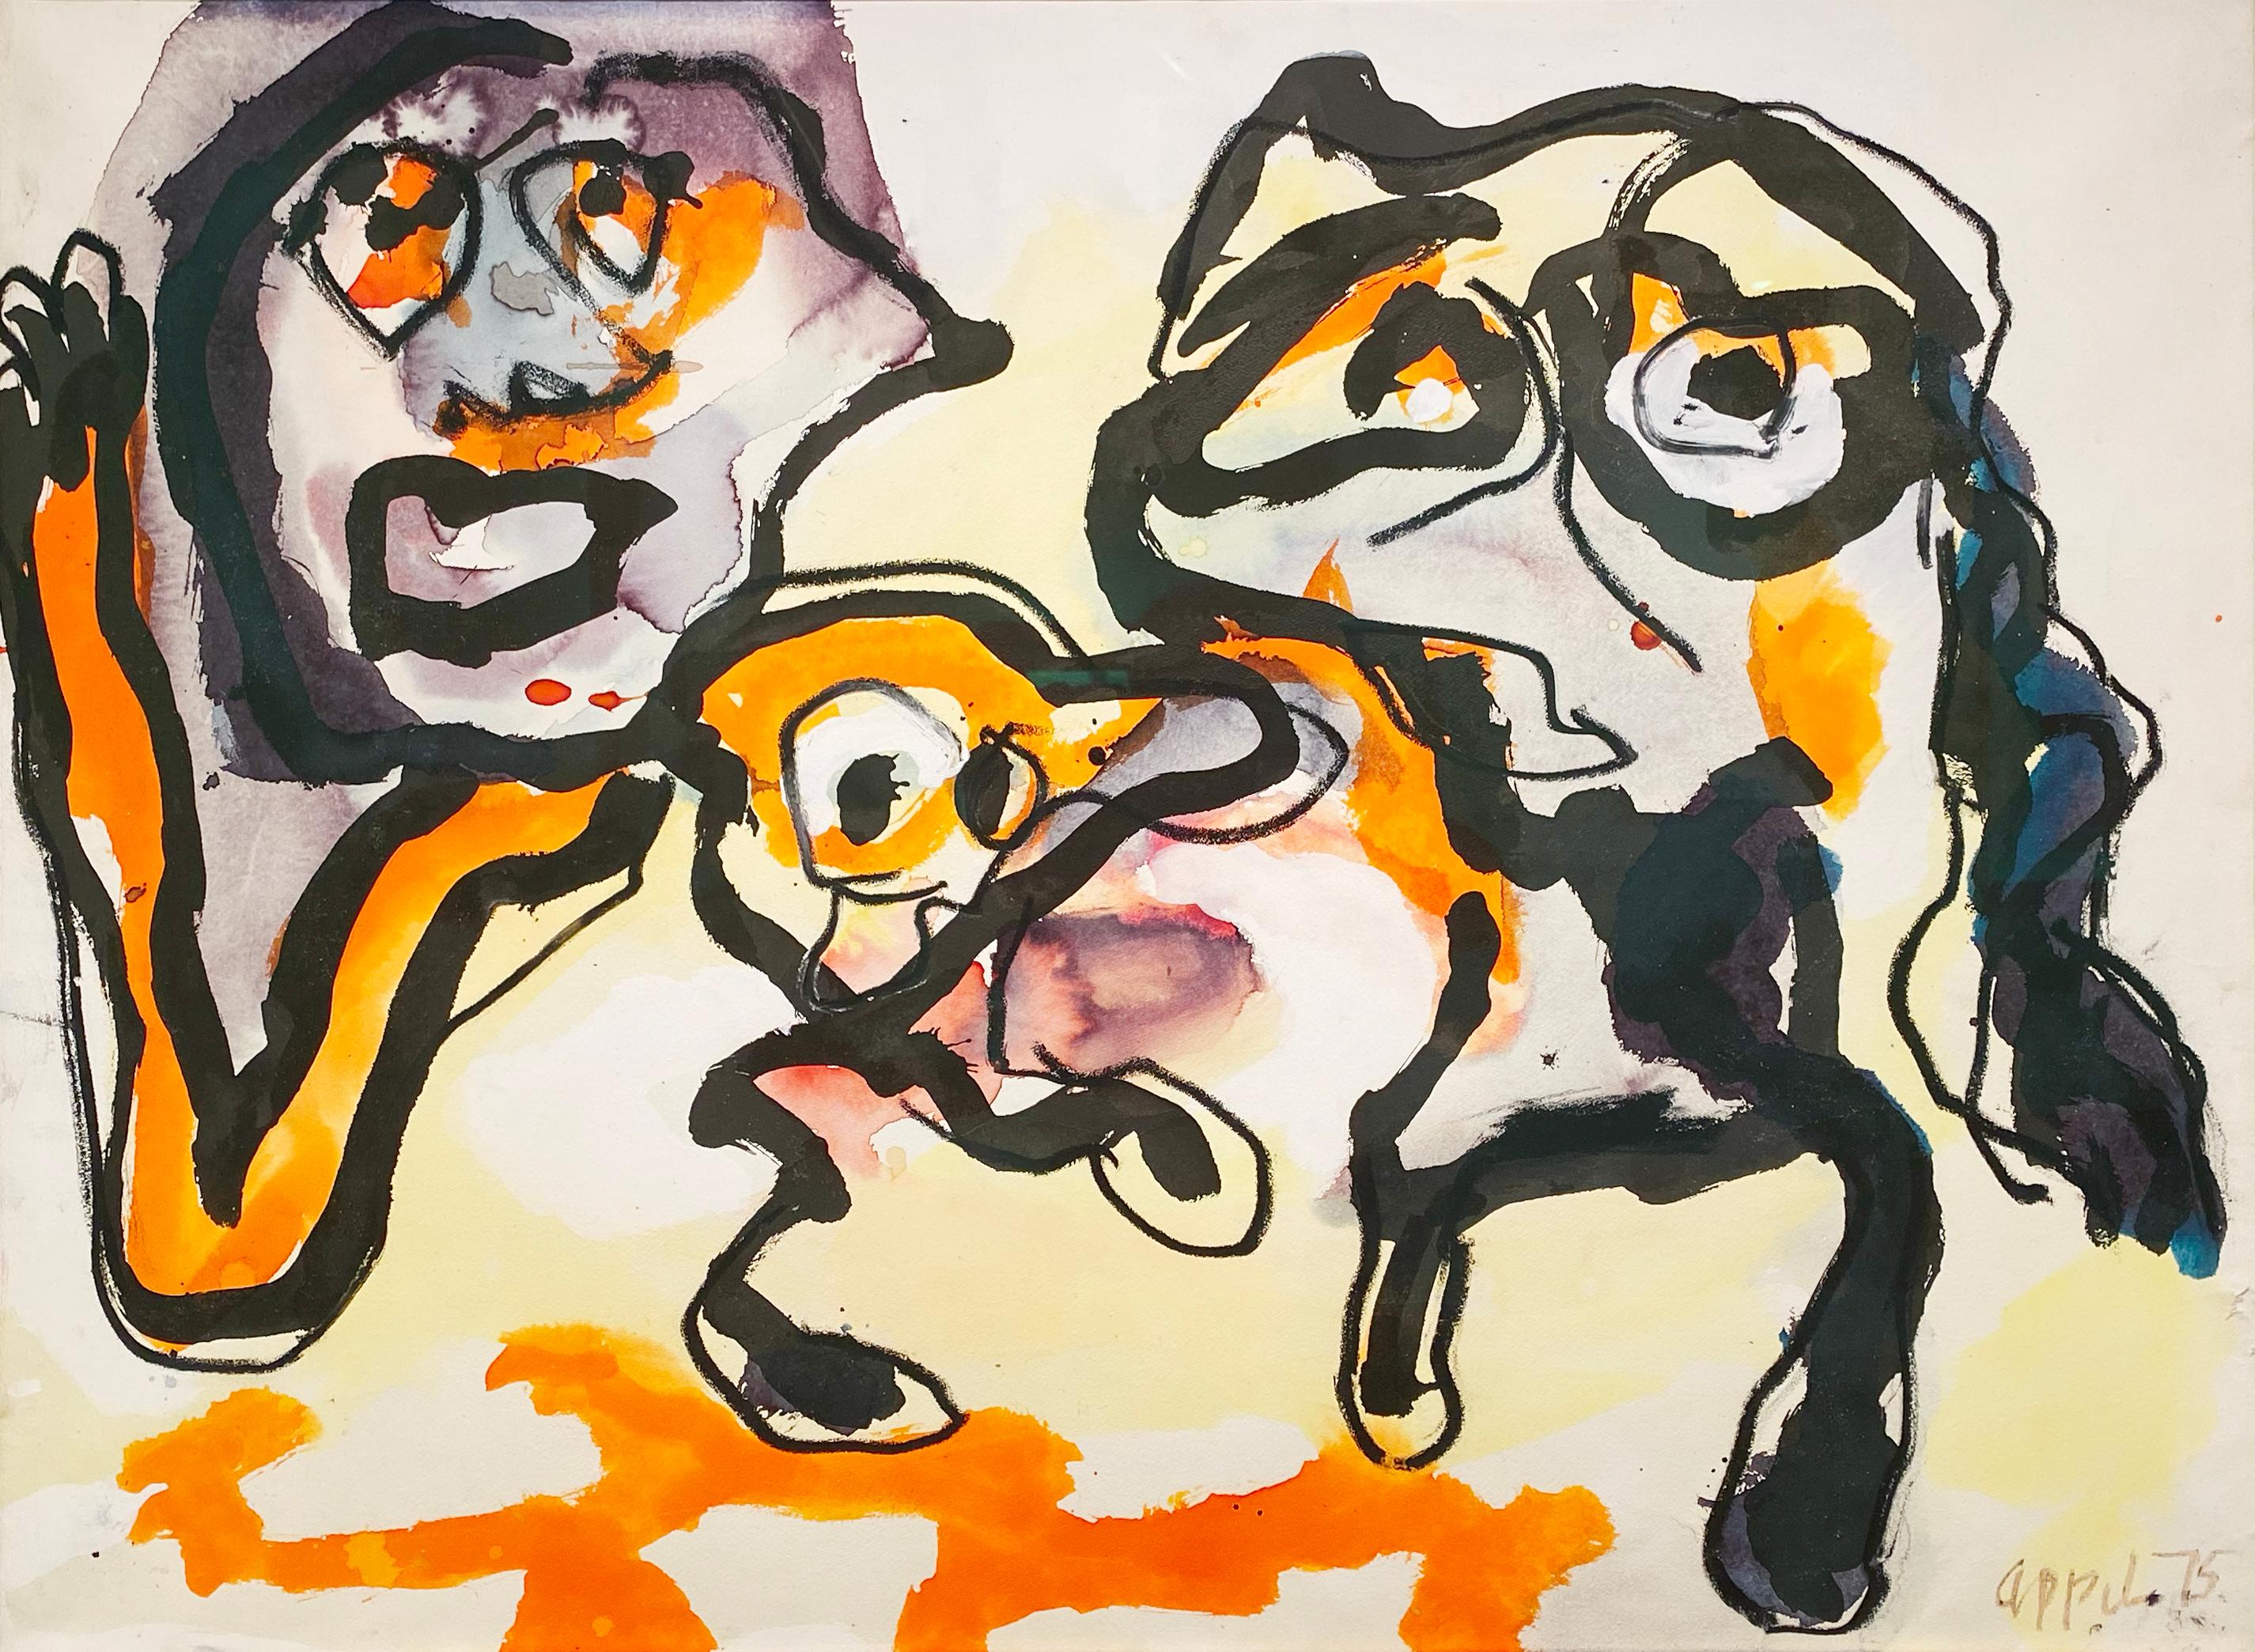 Figures, visages abstraits - Expressionnisme abstrait Painting par Karel Appel